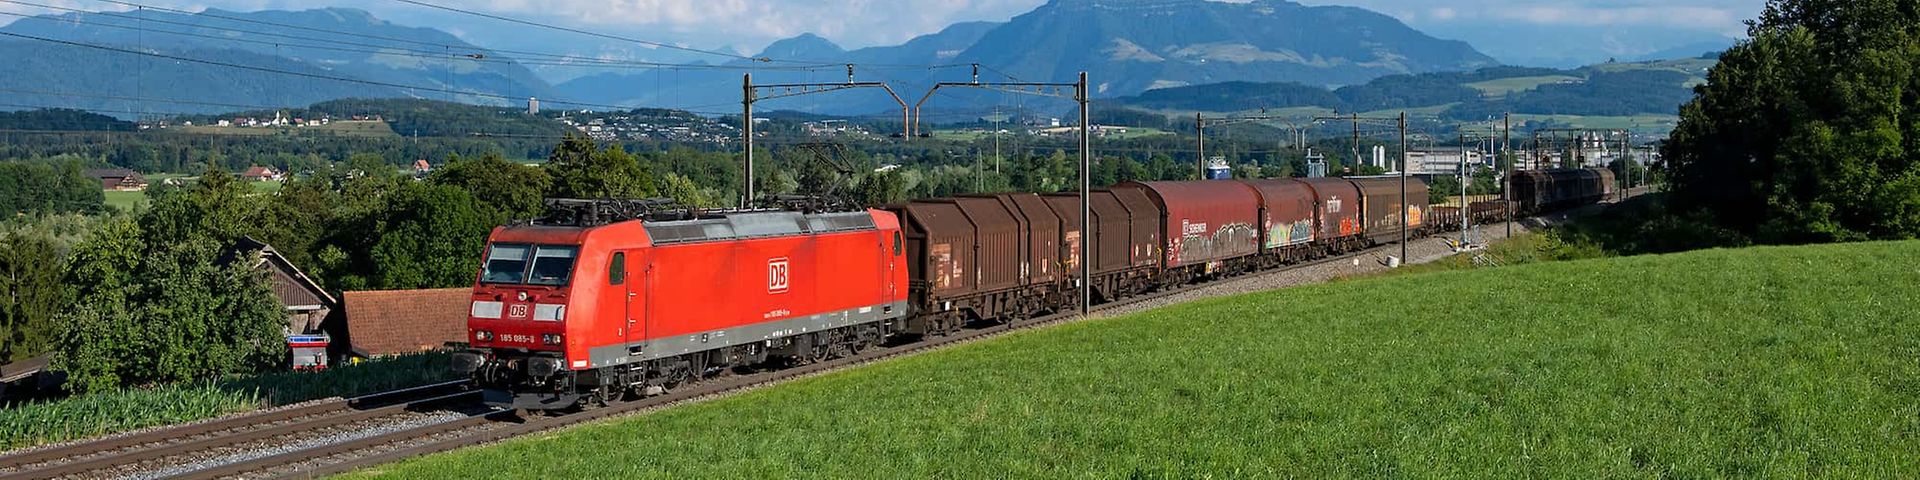 DB Cargo Baureihe 185 zieht Stahlzug Richtung Basel, Deutschland.